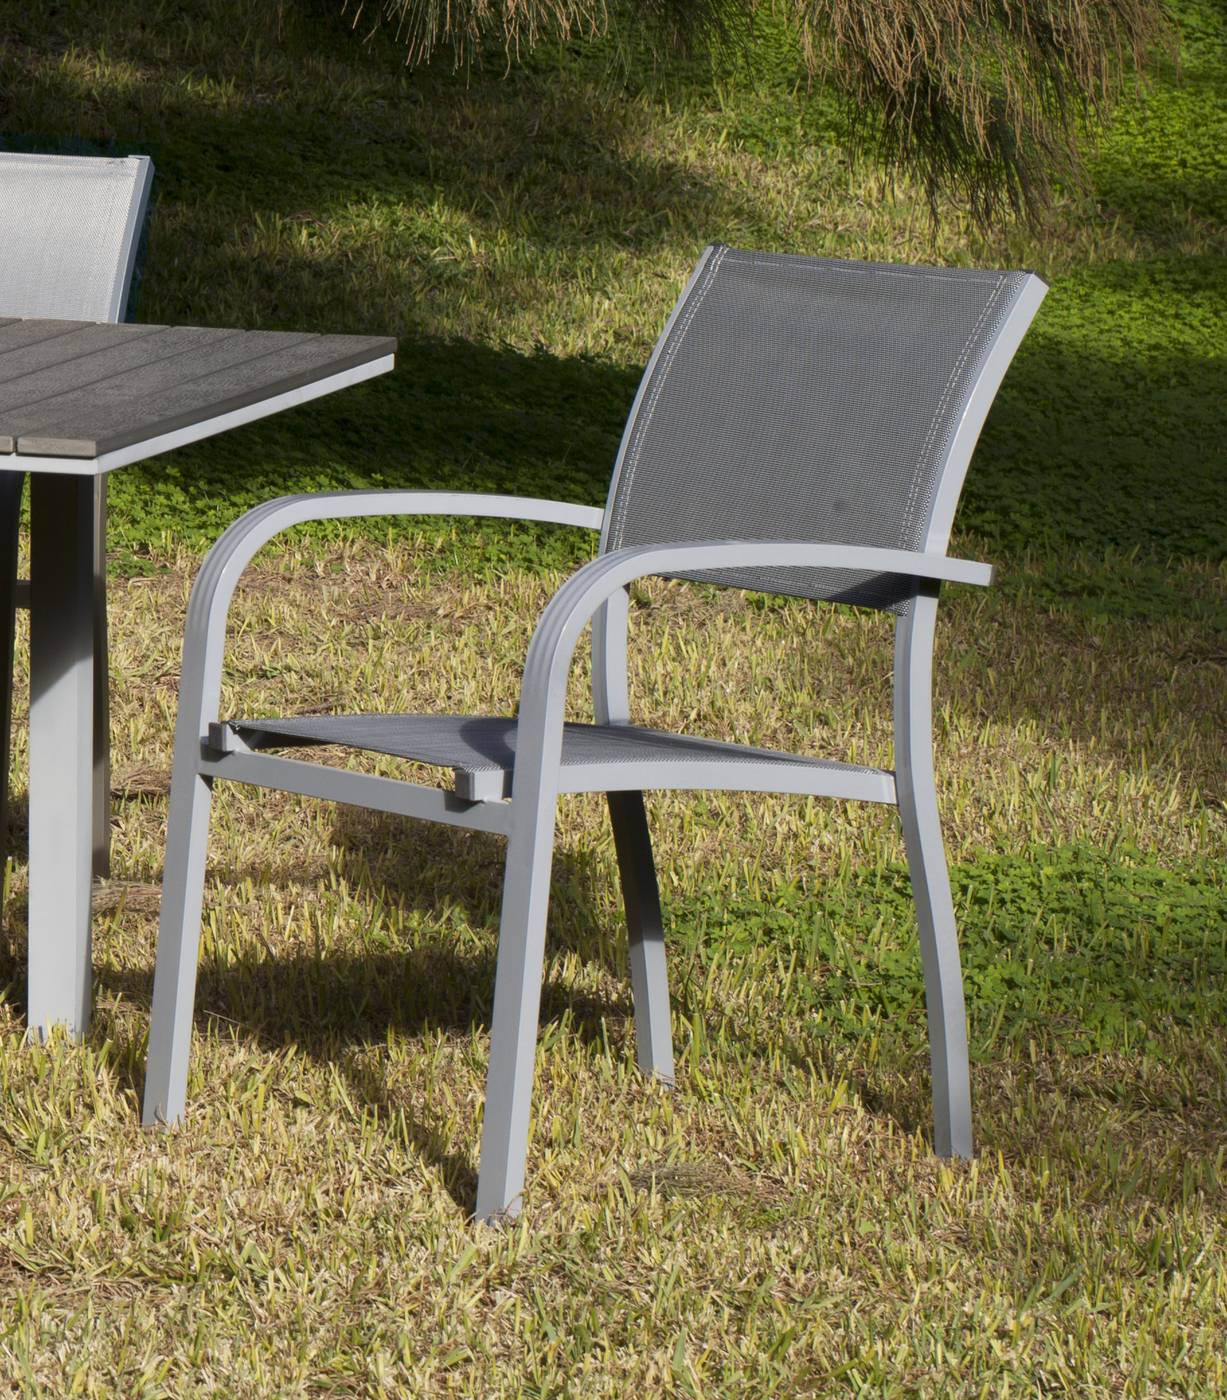 Sillón Aluminio Amberes - Sillón apilable de aluminio color plata, con asiento y respaldo de textilen color gris